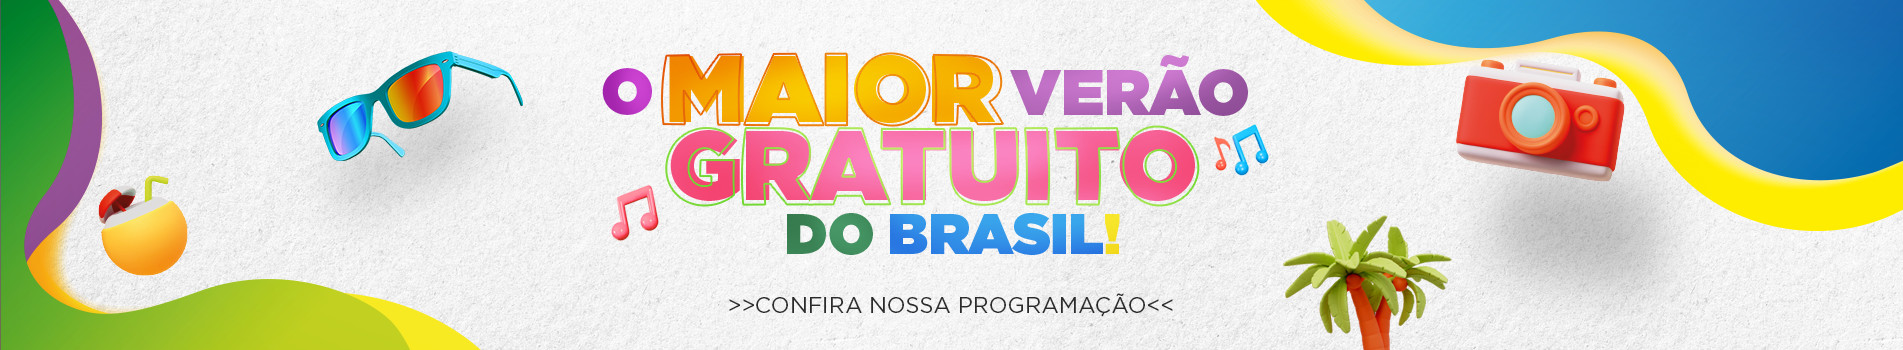 O maior verão Gratuito do Brasil - Confira nossa programação